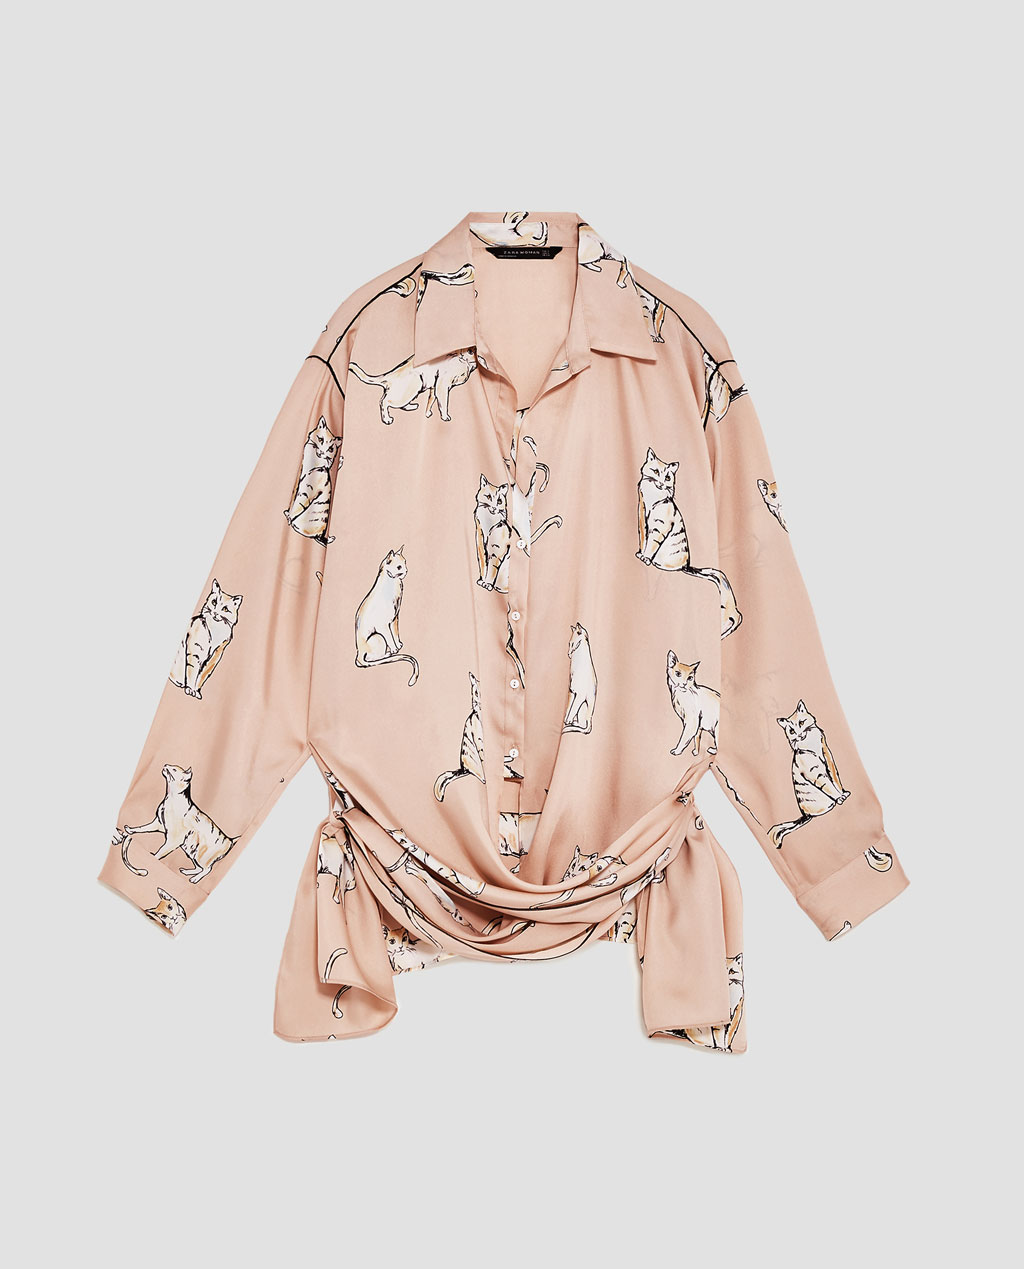 Blusa estamapda com cinto, Zara, €39.95